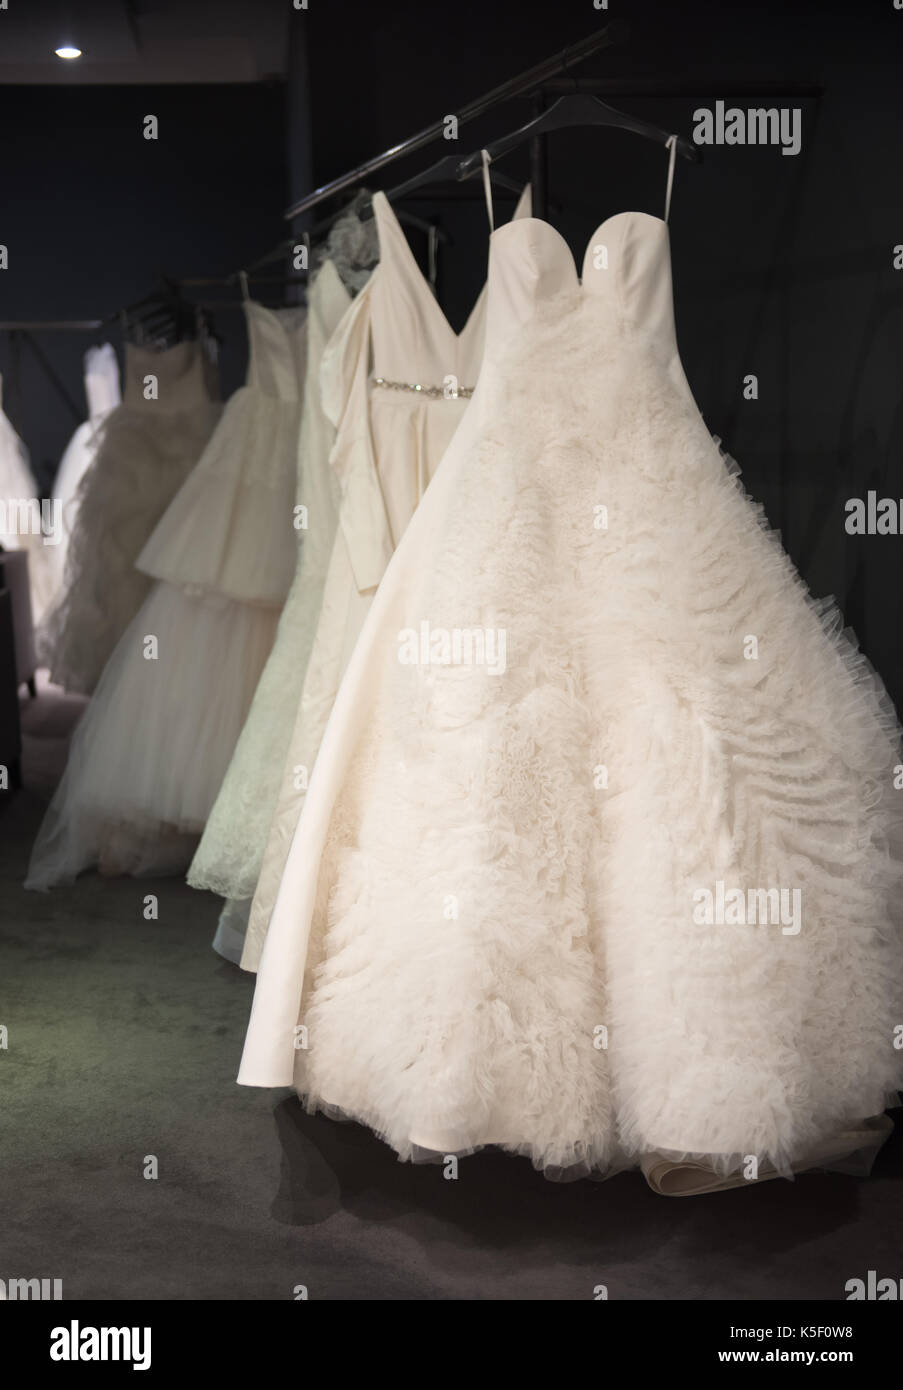 Auswahl der weiße Brautkleider und Ballkleider auf Anzeige hängen auf Schienen mit selektiven Fokus auf einer beleuchteten durch ein Highlight Stockfoto